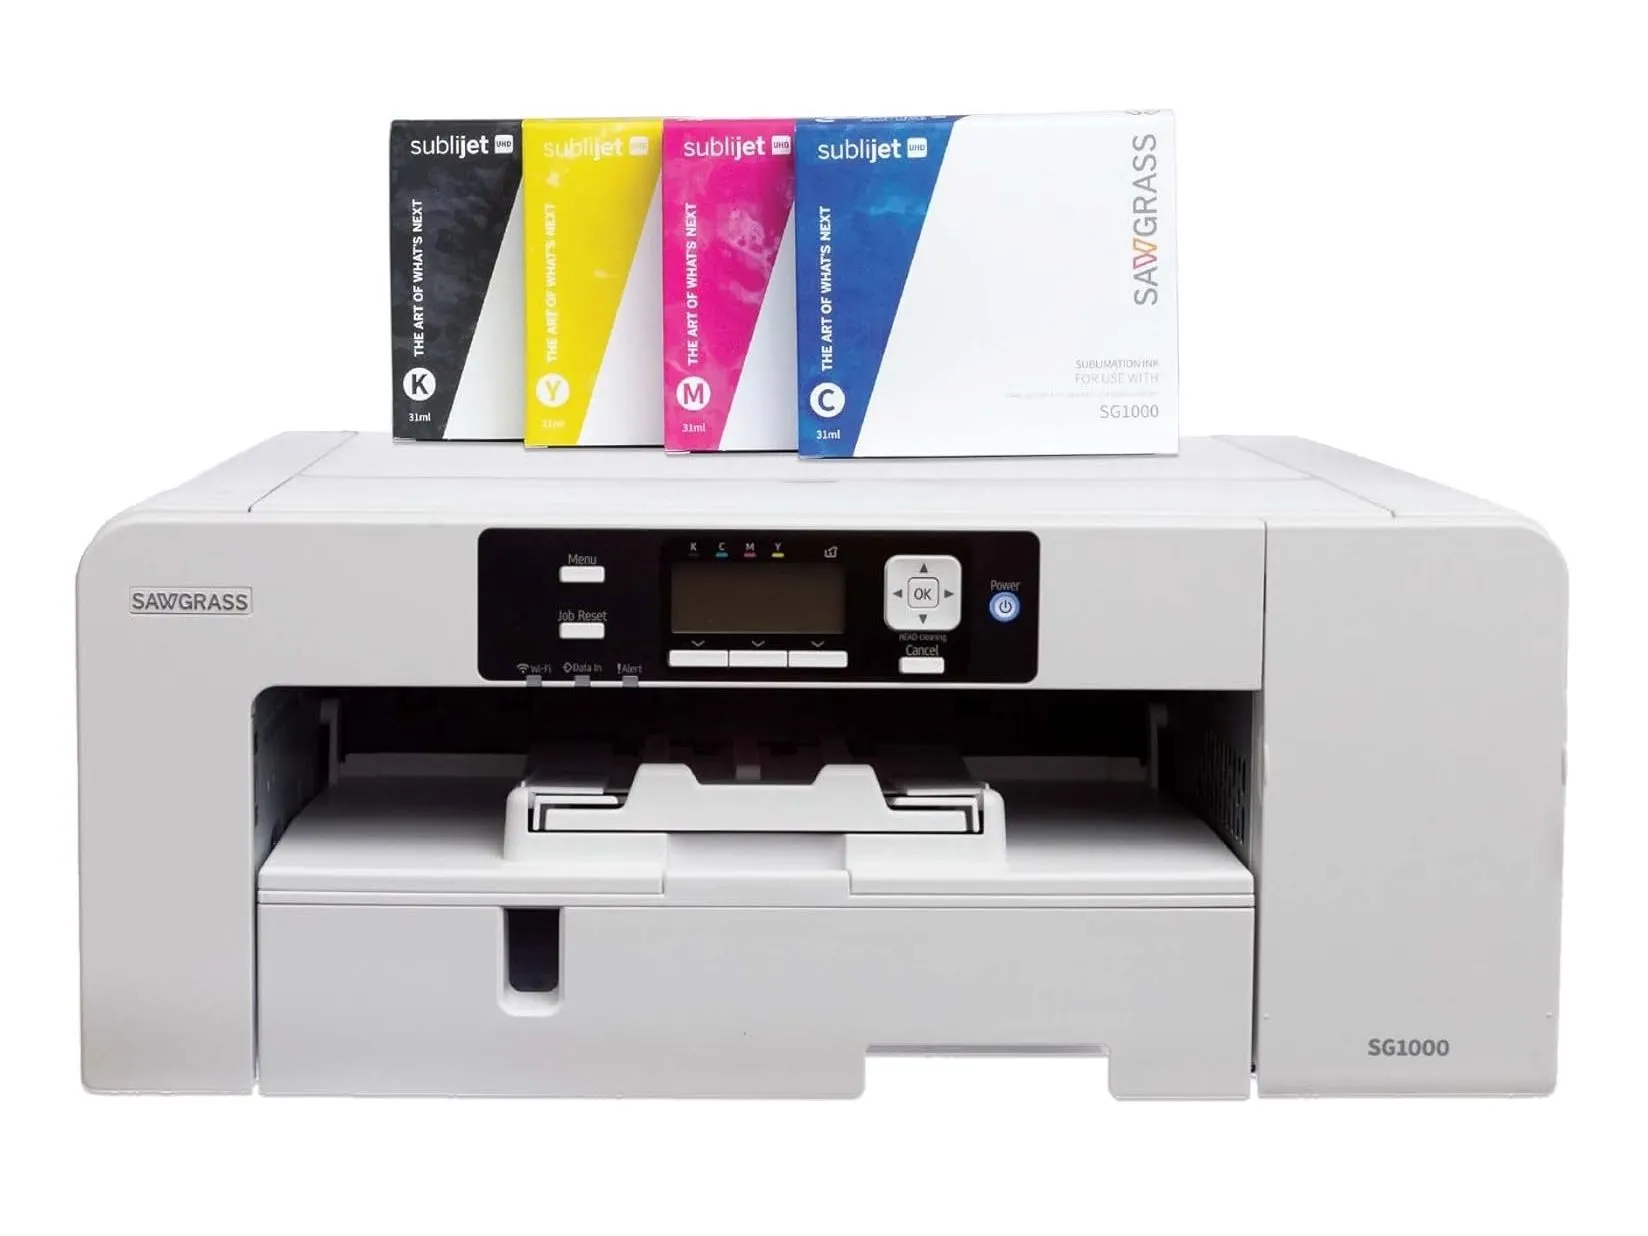 A Impressora por Sublimação Sawgrass SG1000 com papel associado.